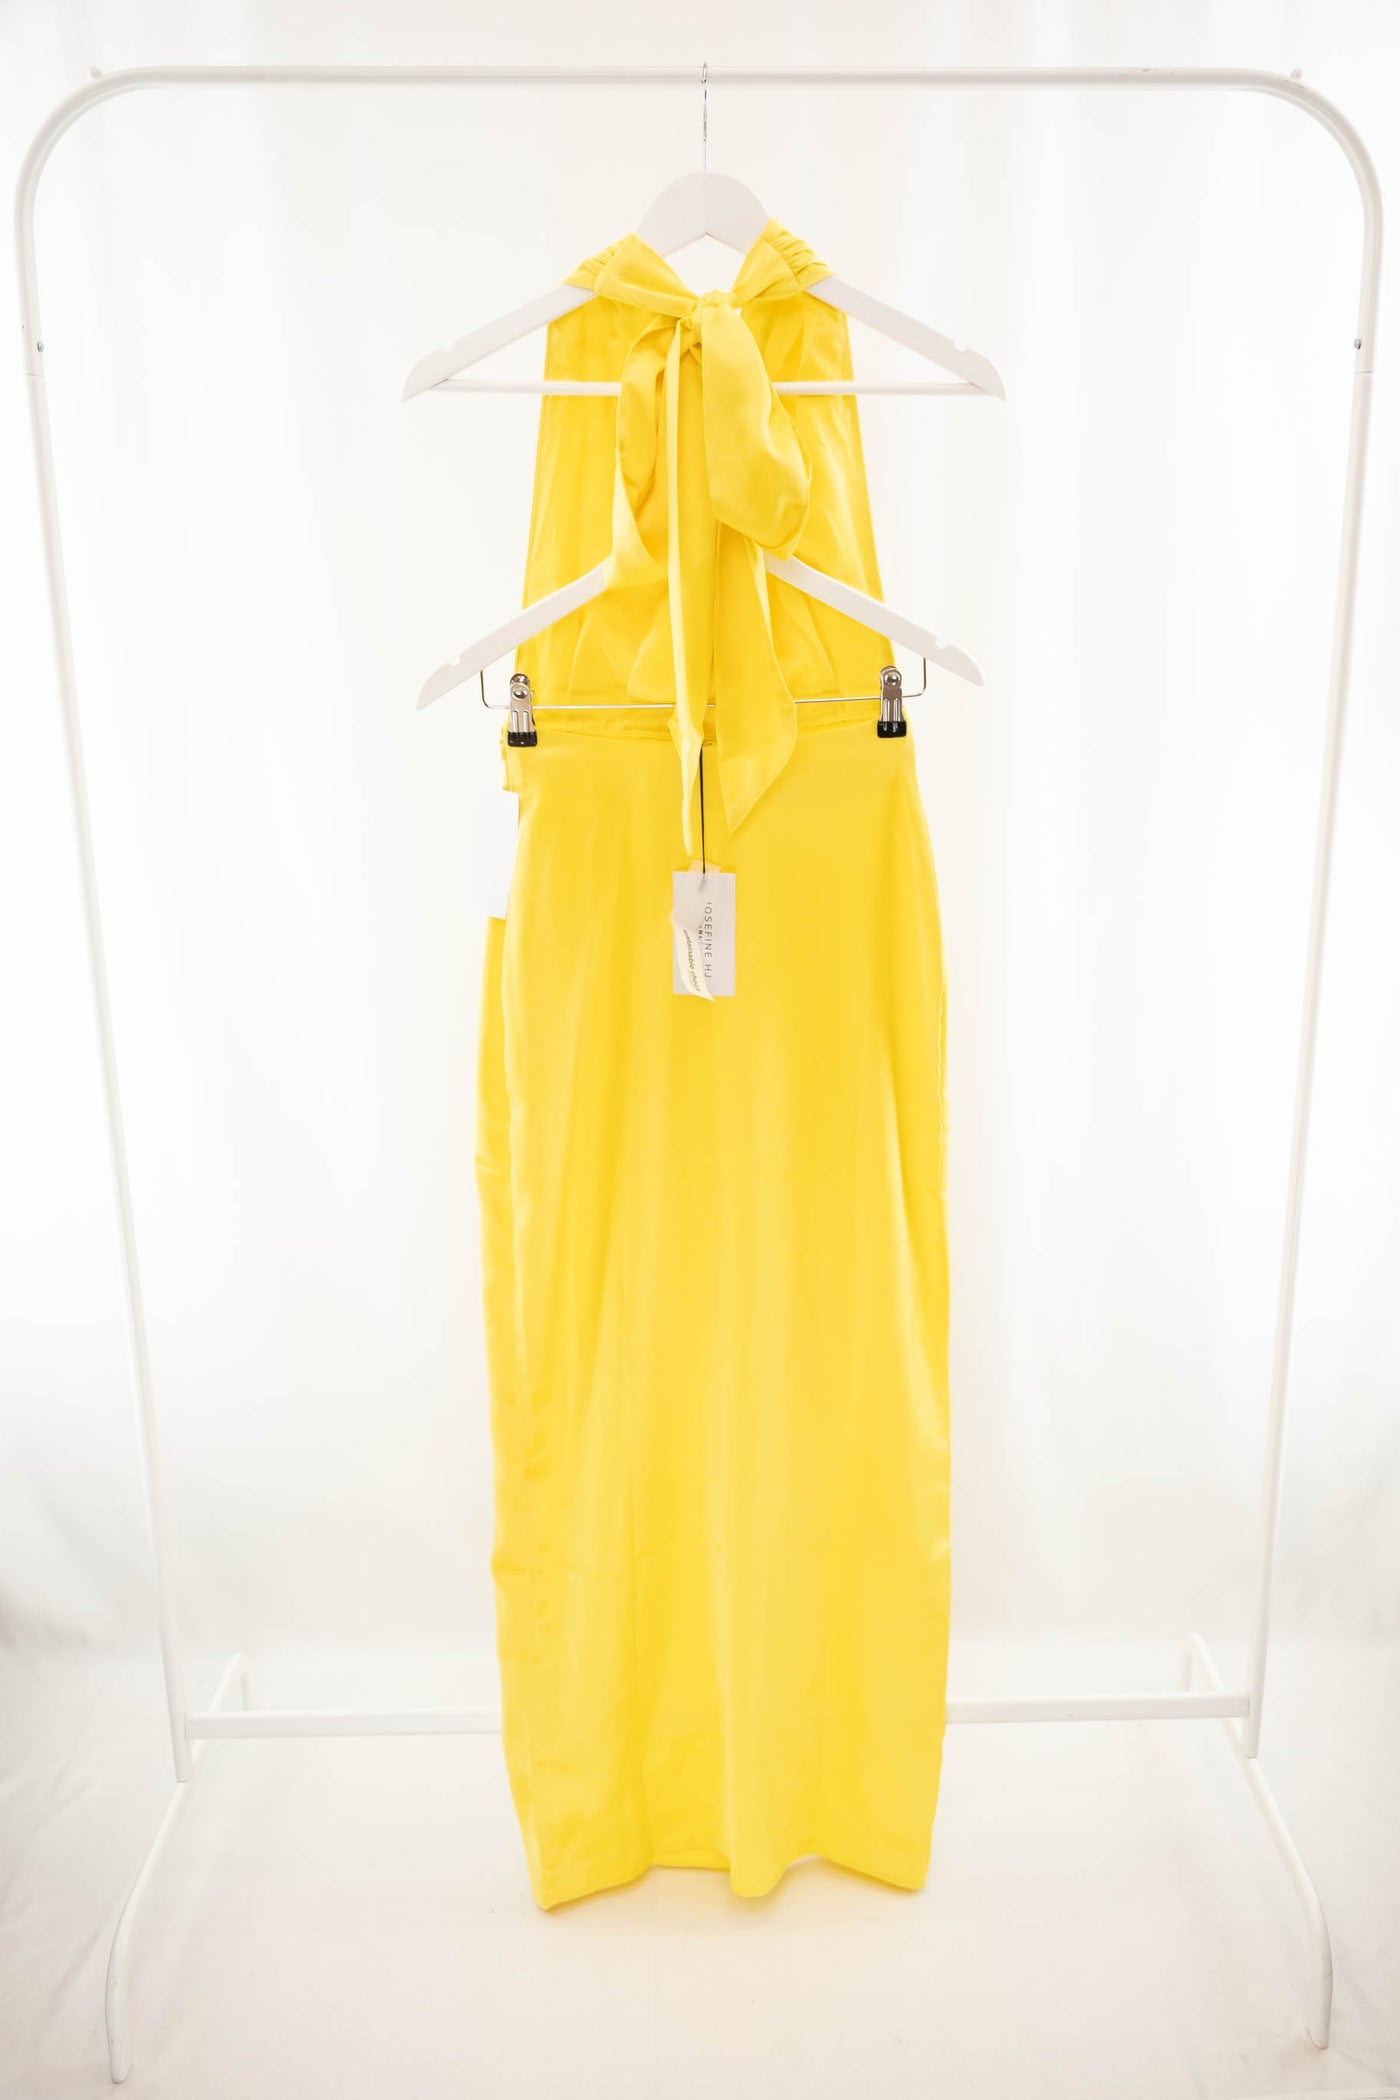 Vestido satinado amarillo (NUEVO)